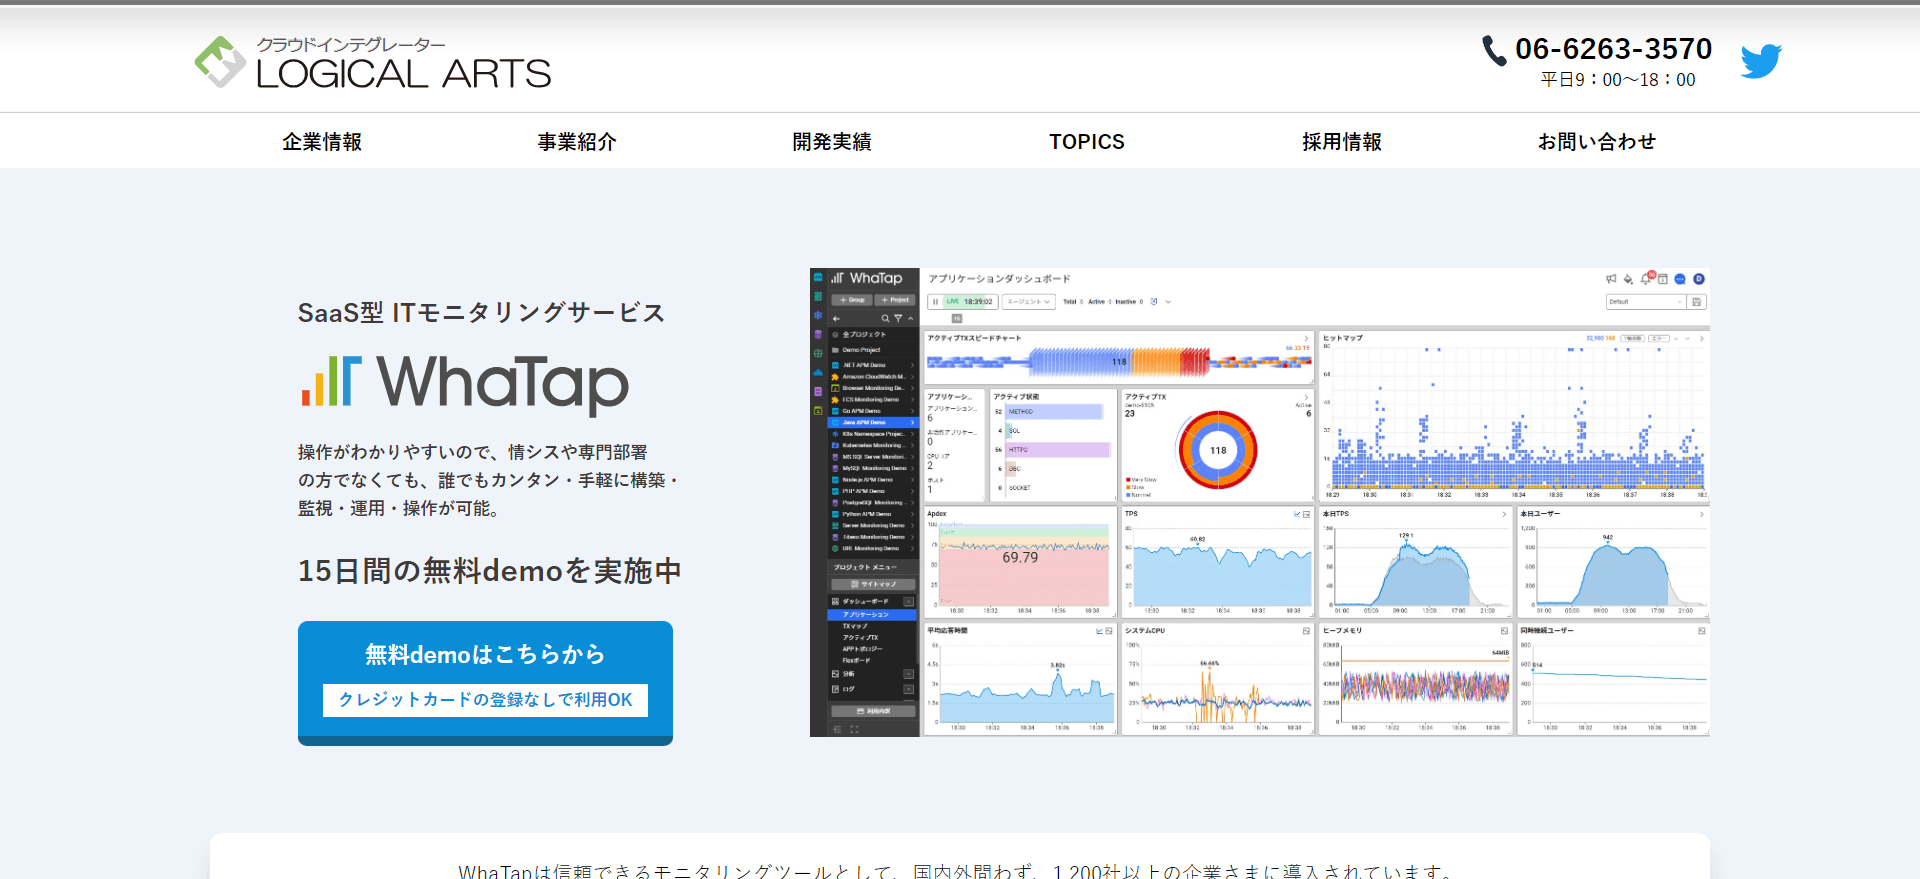 データベース監視ツールのWhaTap公式サイトキャプチャ画面